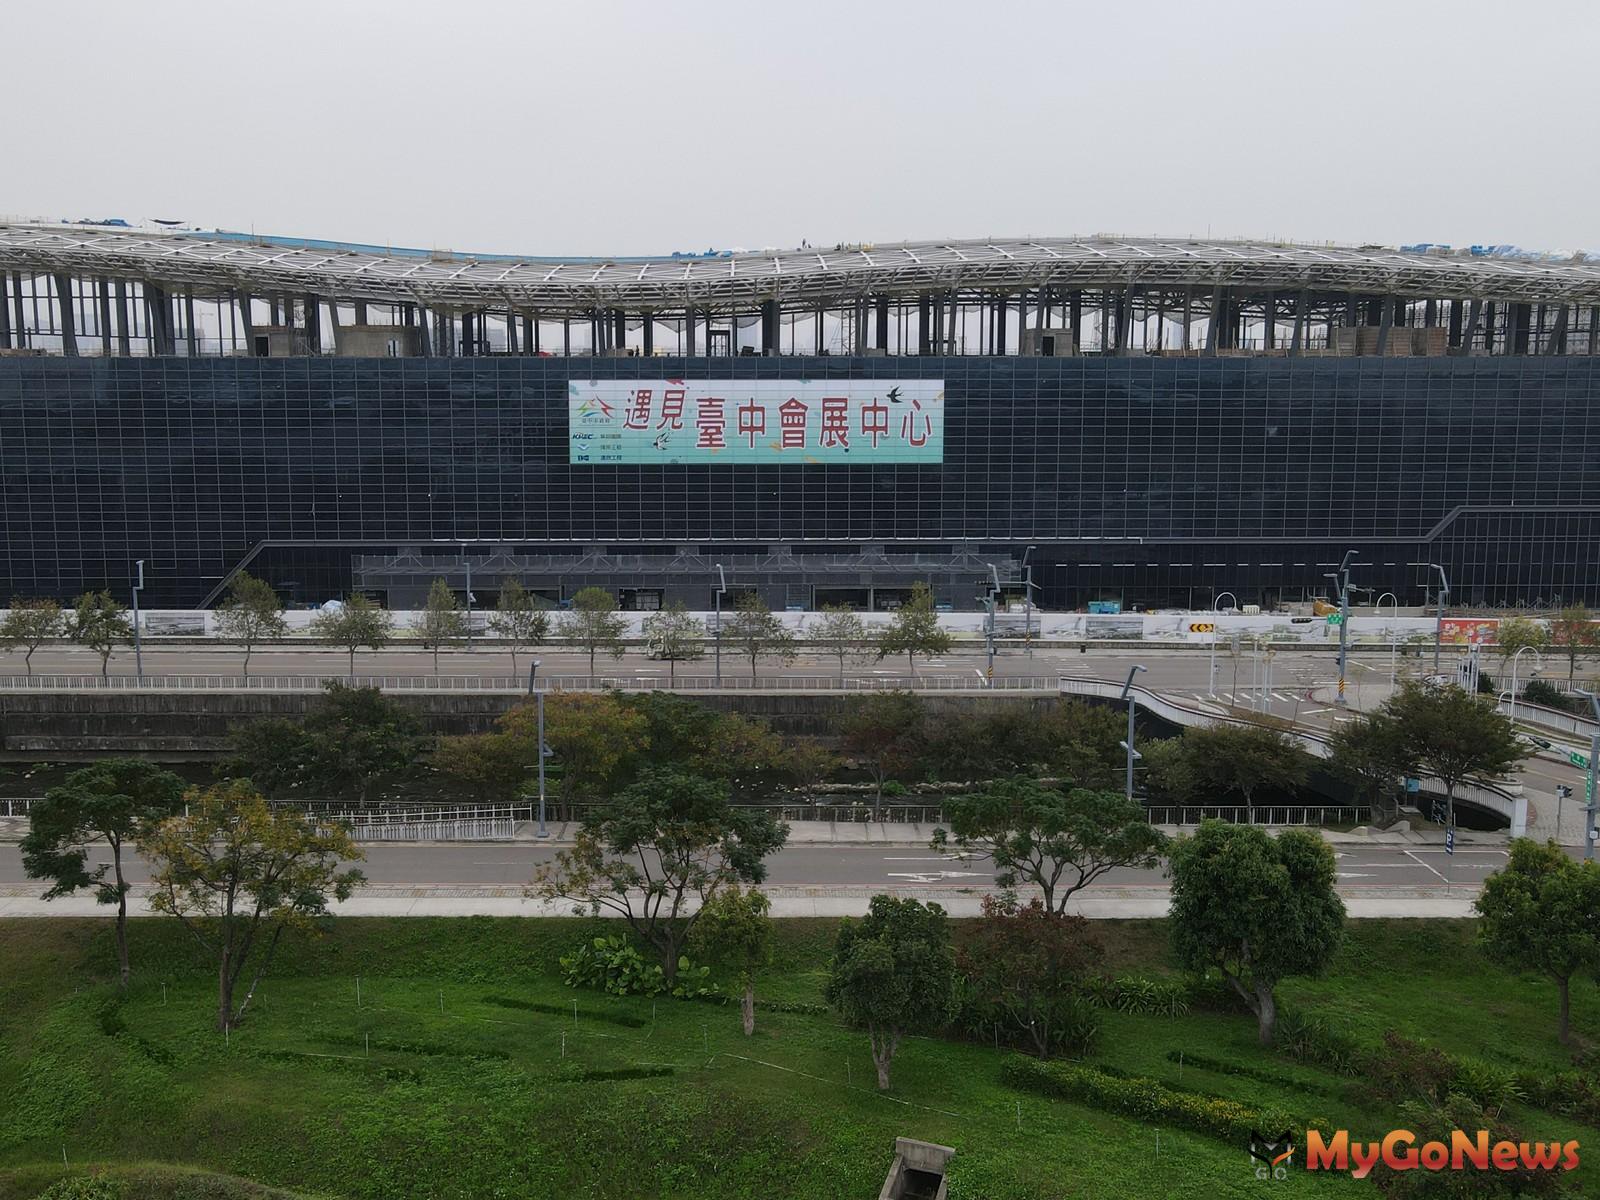 「台中國際會展中心」全案預計2024年完工、2026年啟用。(圖/台中市政府) MyGoNews房地產新聞 區域情報